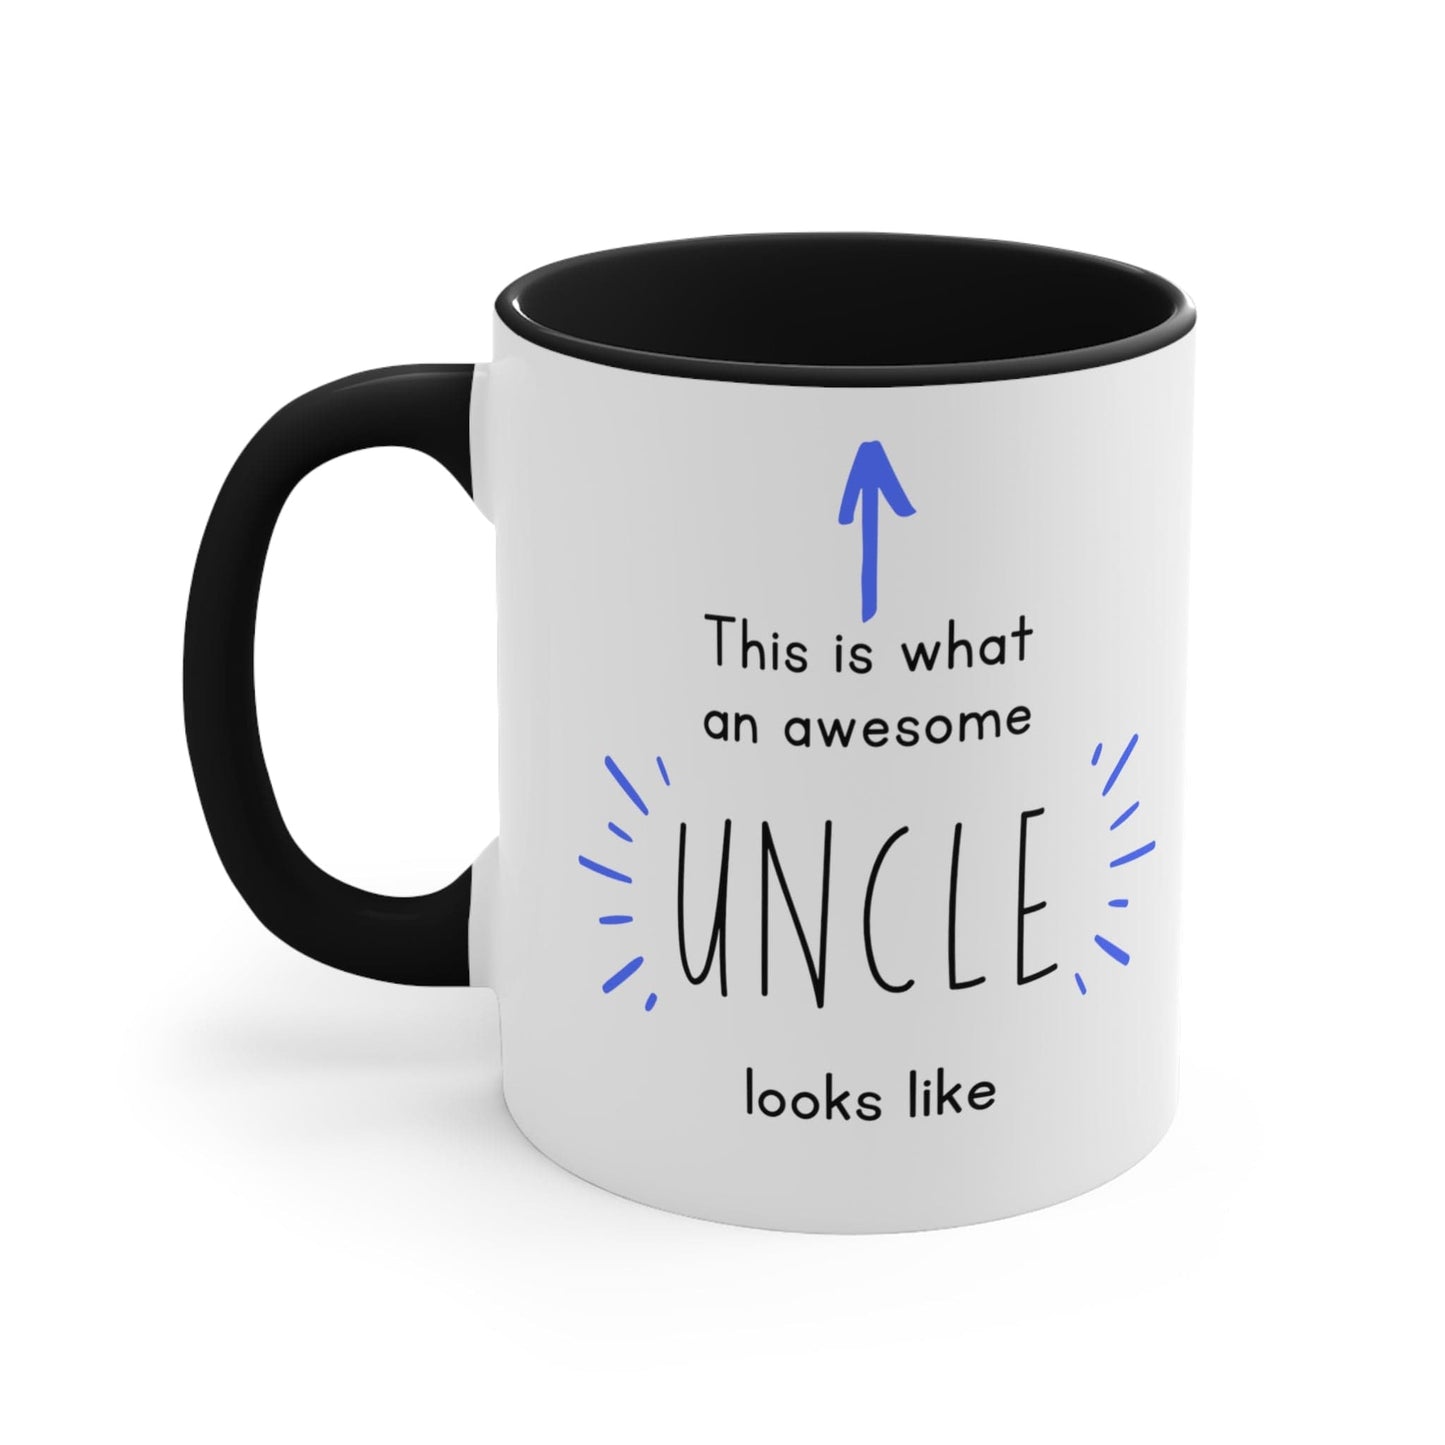 Best Uncle ever Coffee Mug